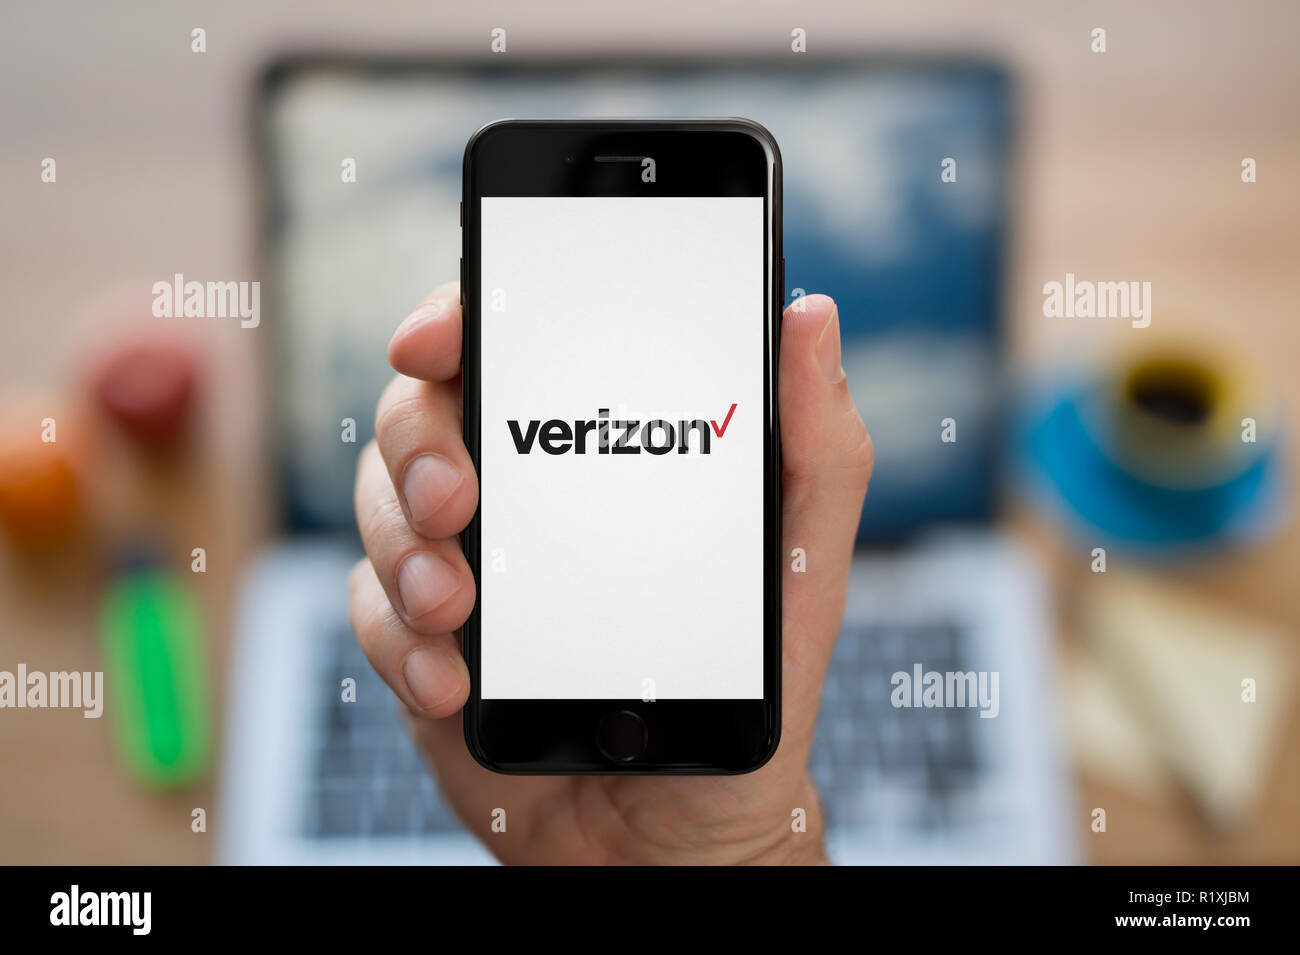 Un uomo guarda al suo iPhone che visualizza il logo Verizon, mentre se ne sta seduto alla sua scrivania per computer (solo uso editoriale). Foto Stock